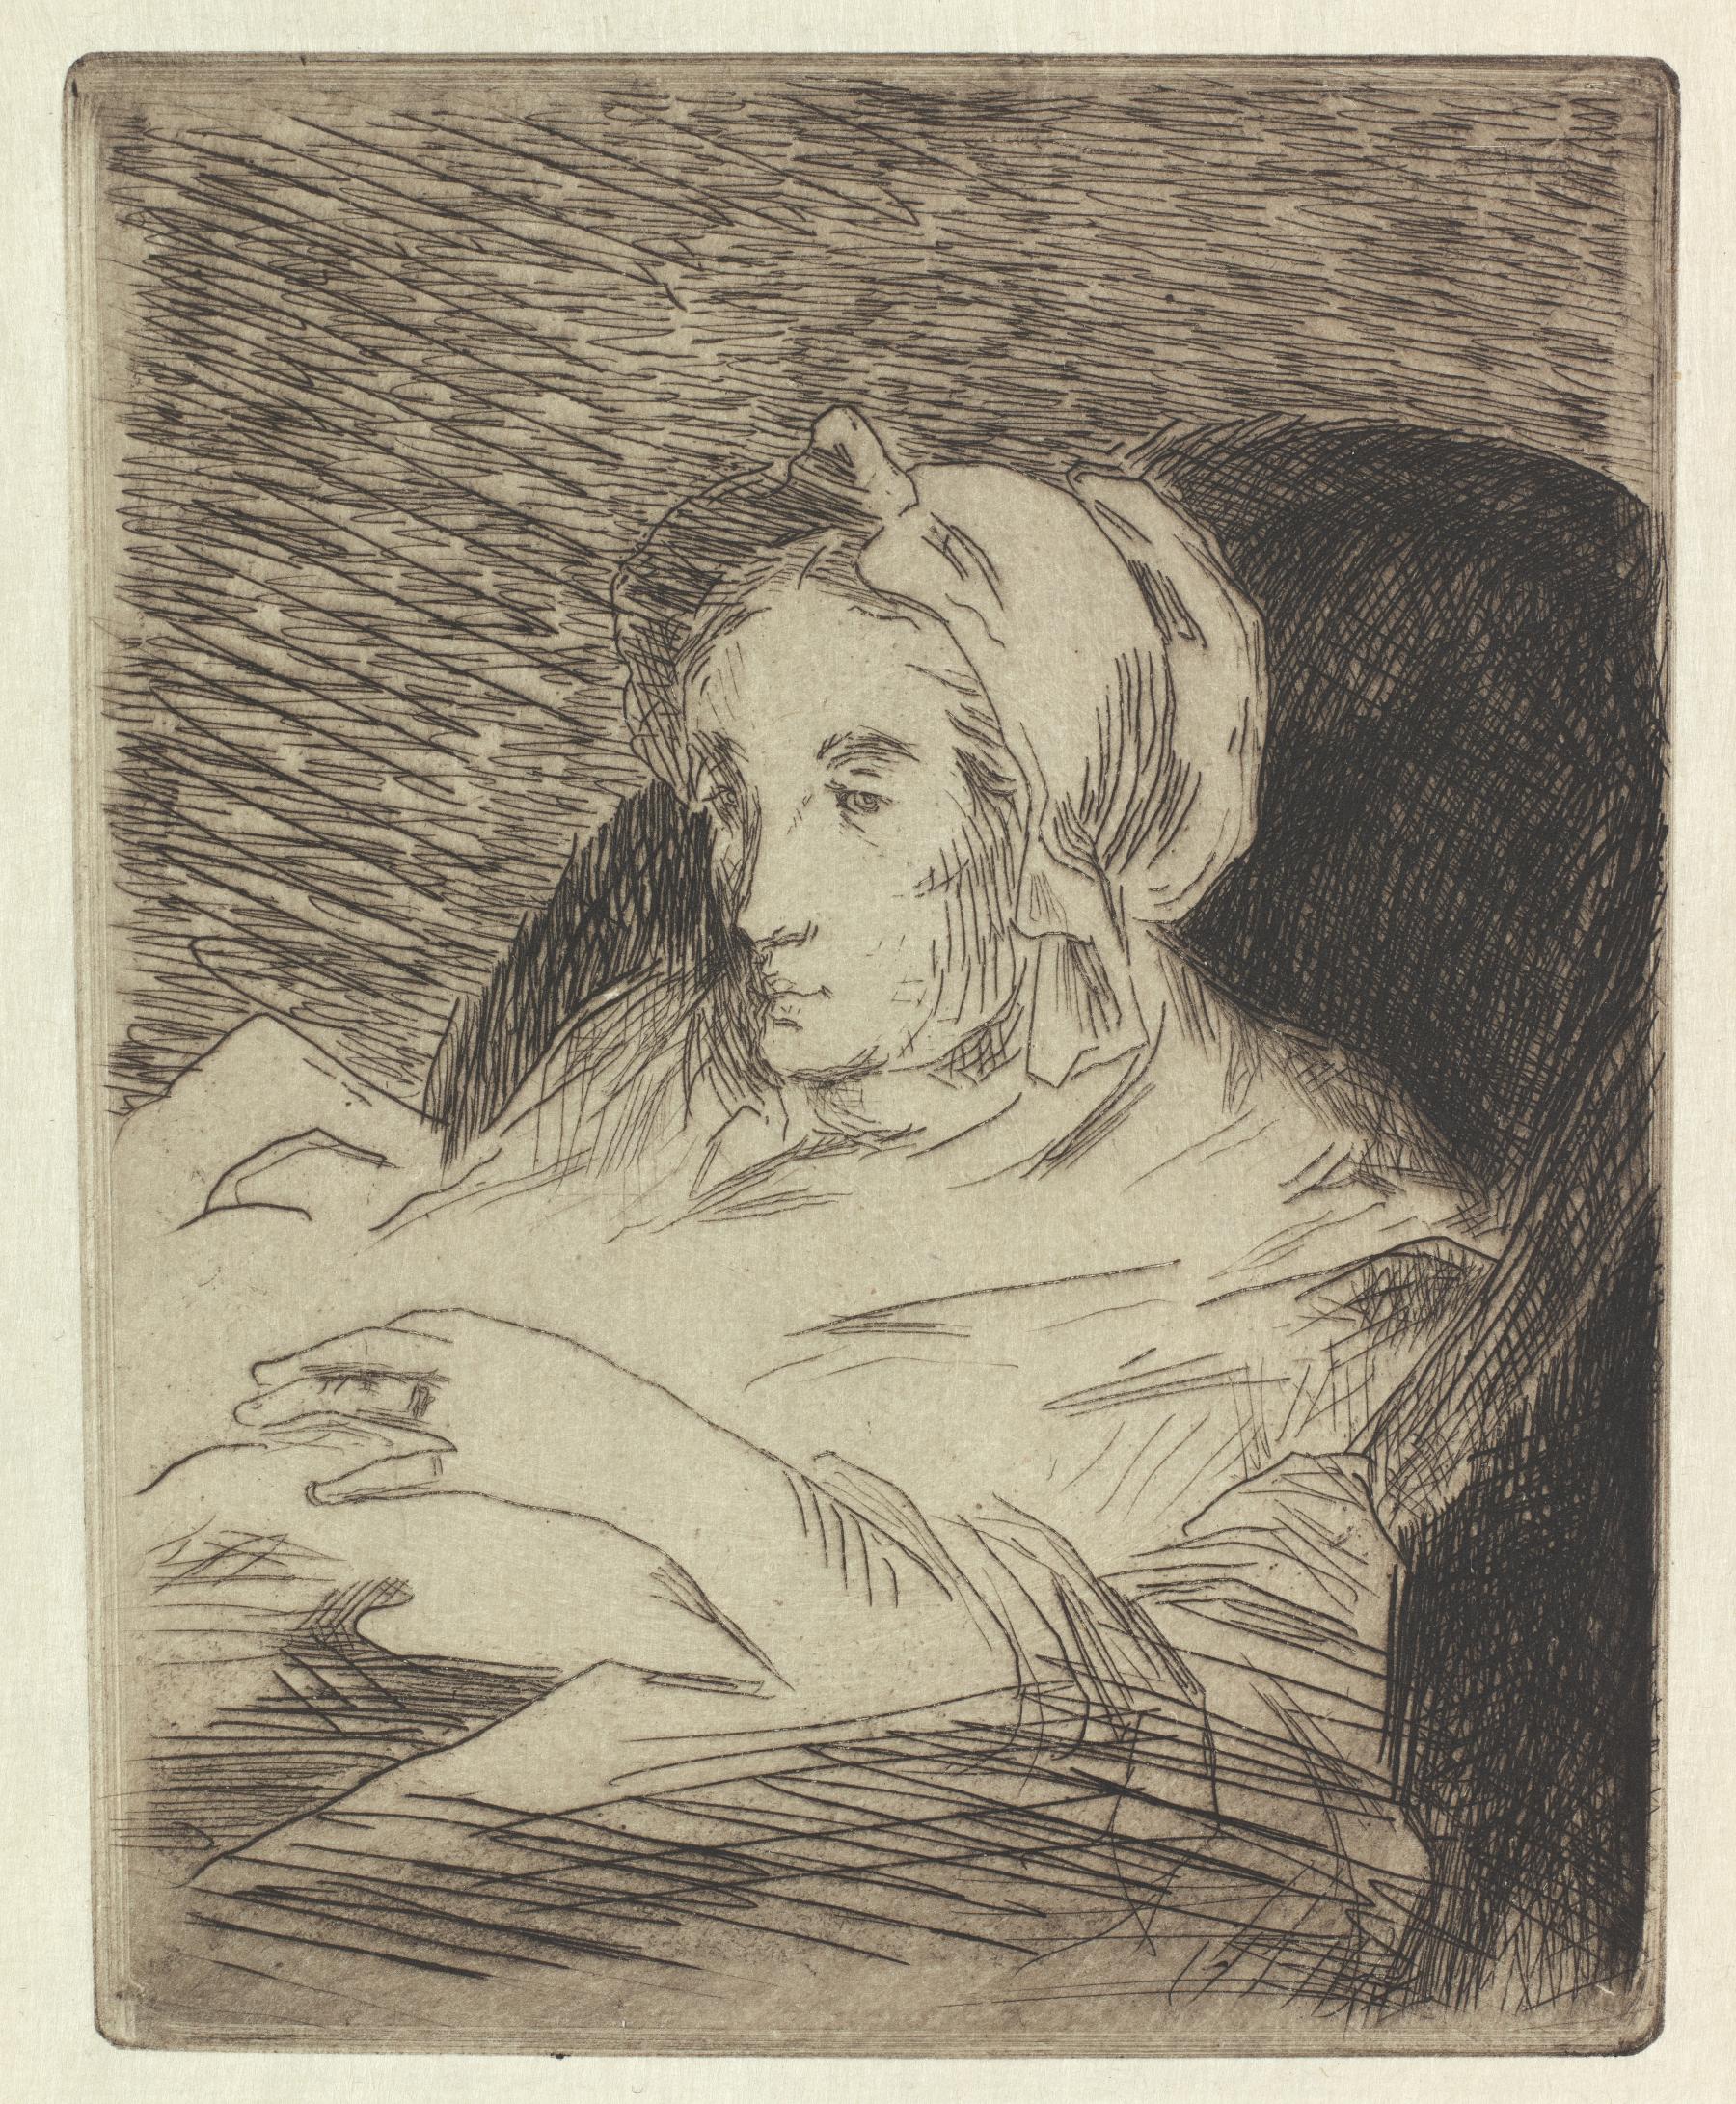 Édouard Manet, La convalescente, 1876-1884, ets, 129 x 102 mm, Amsterdam, Museum Het Rembrandthuis